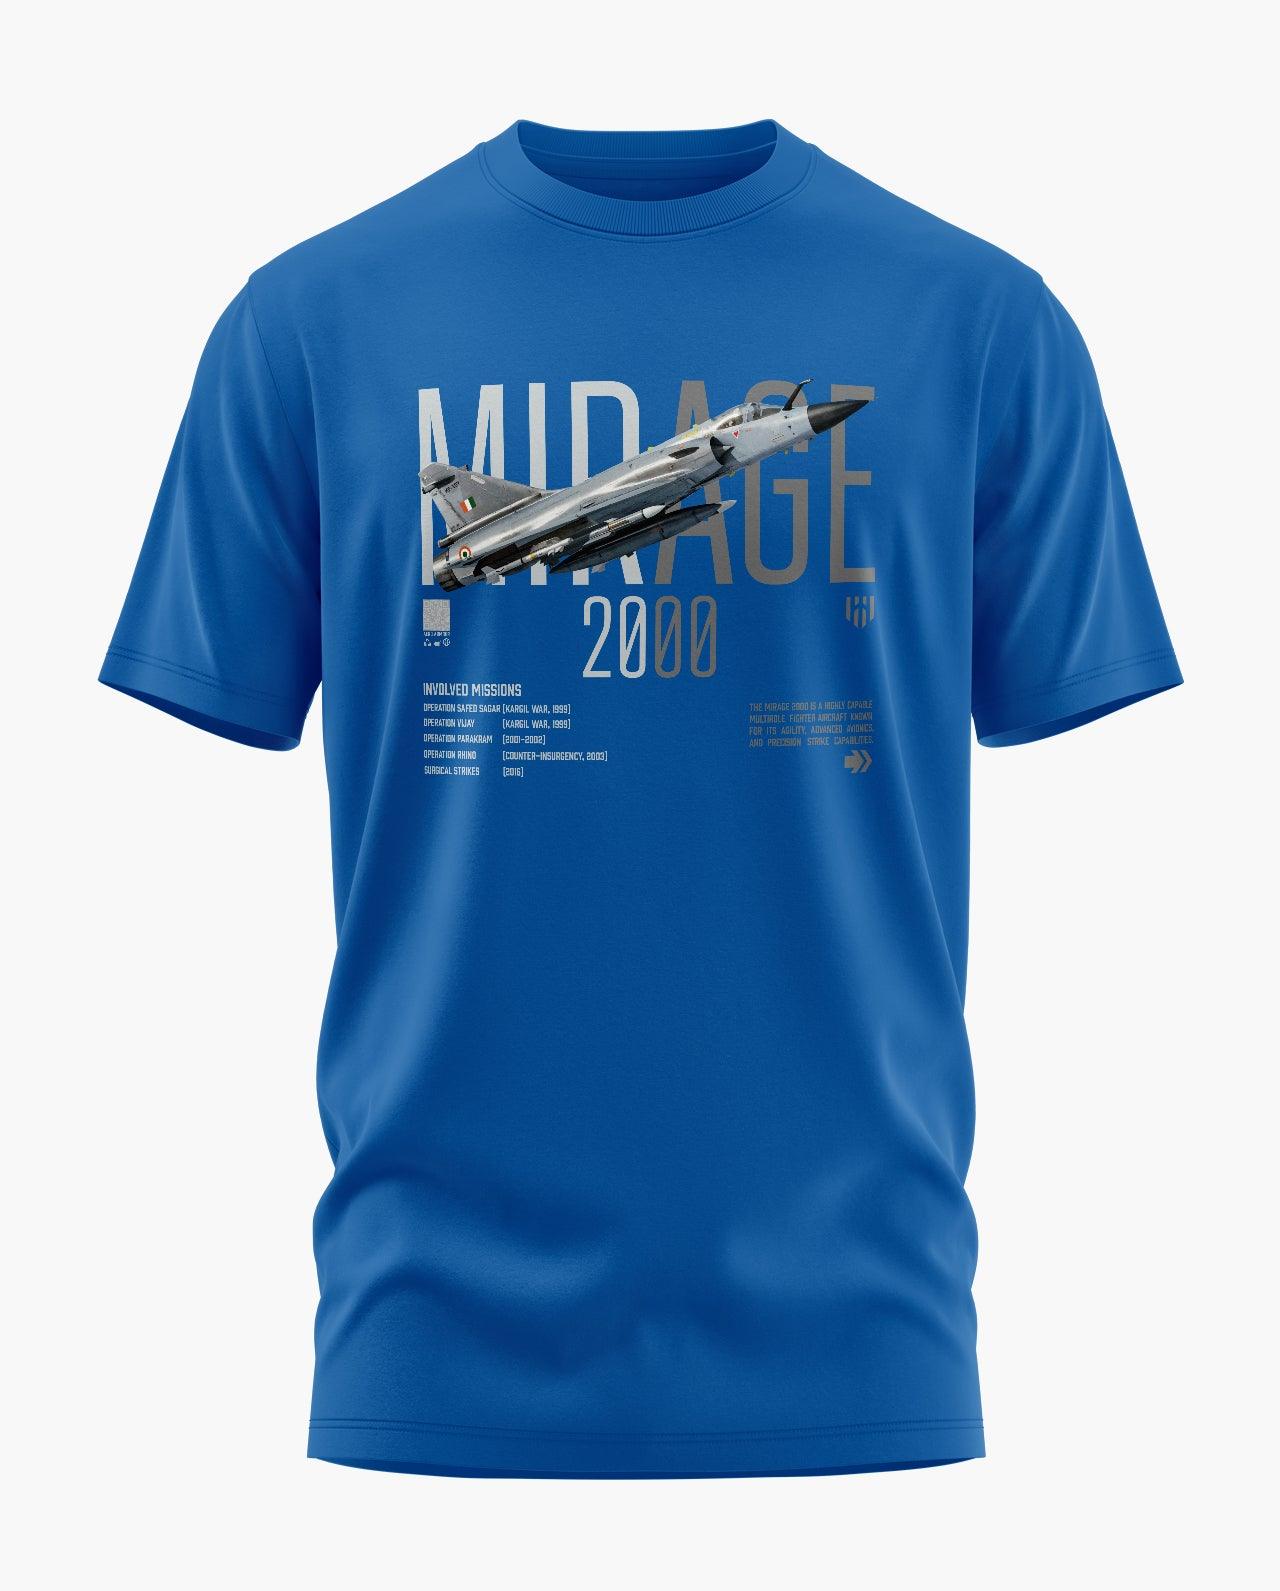 MIRAGE 2000 VALOUR T-Shirt - Aero Armour